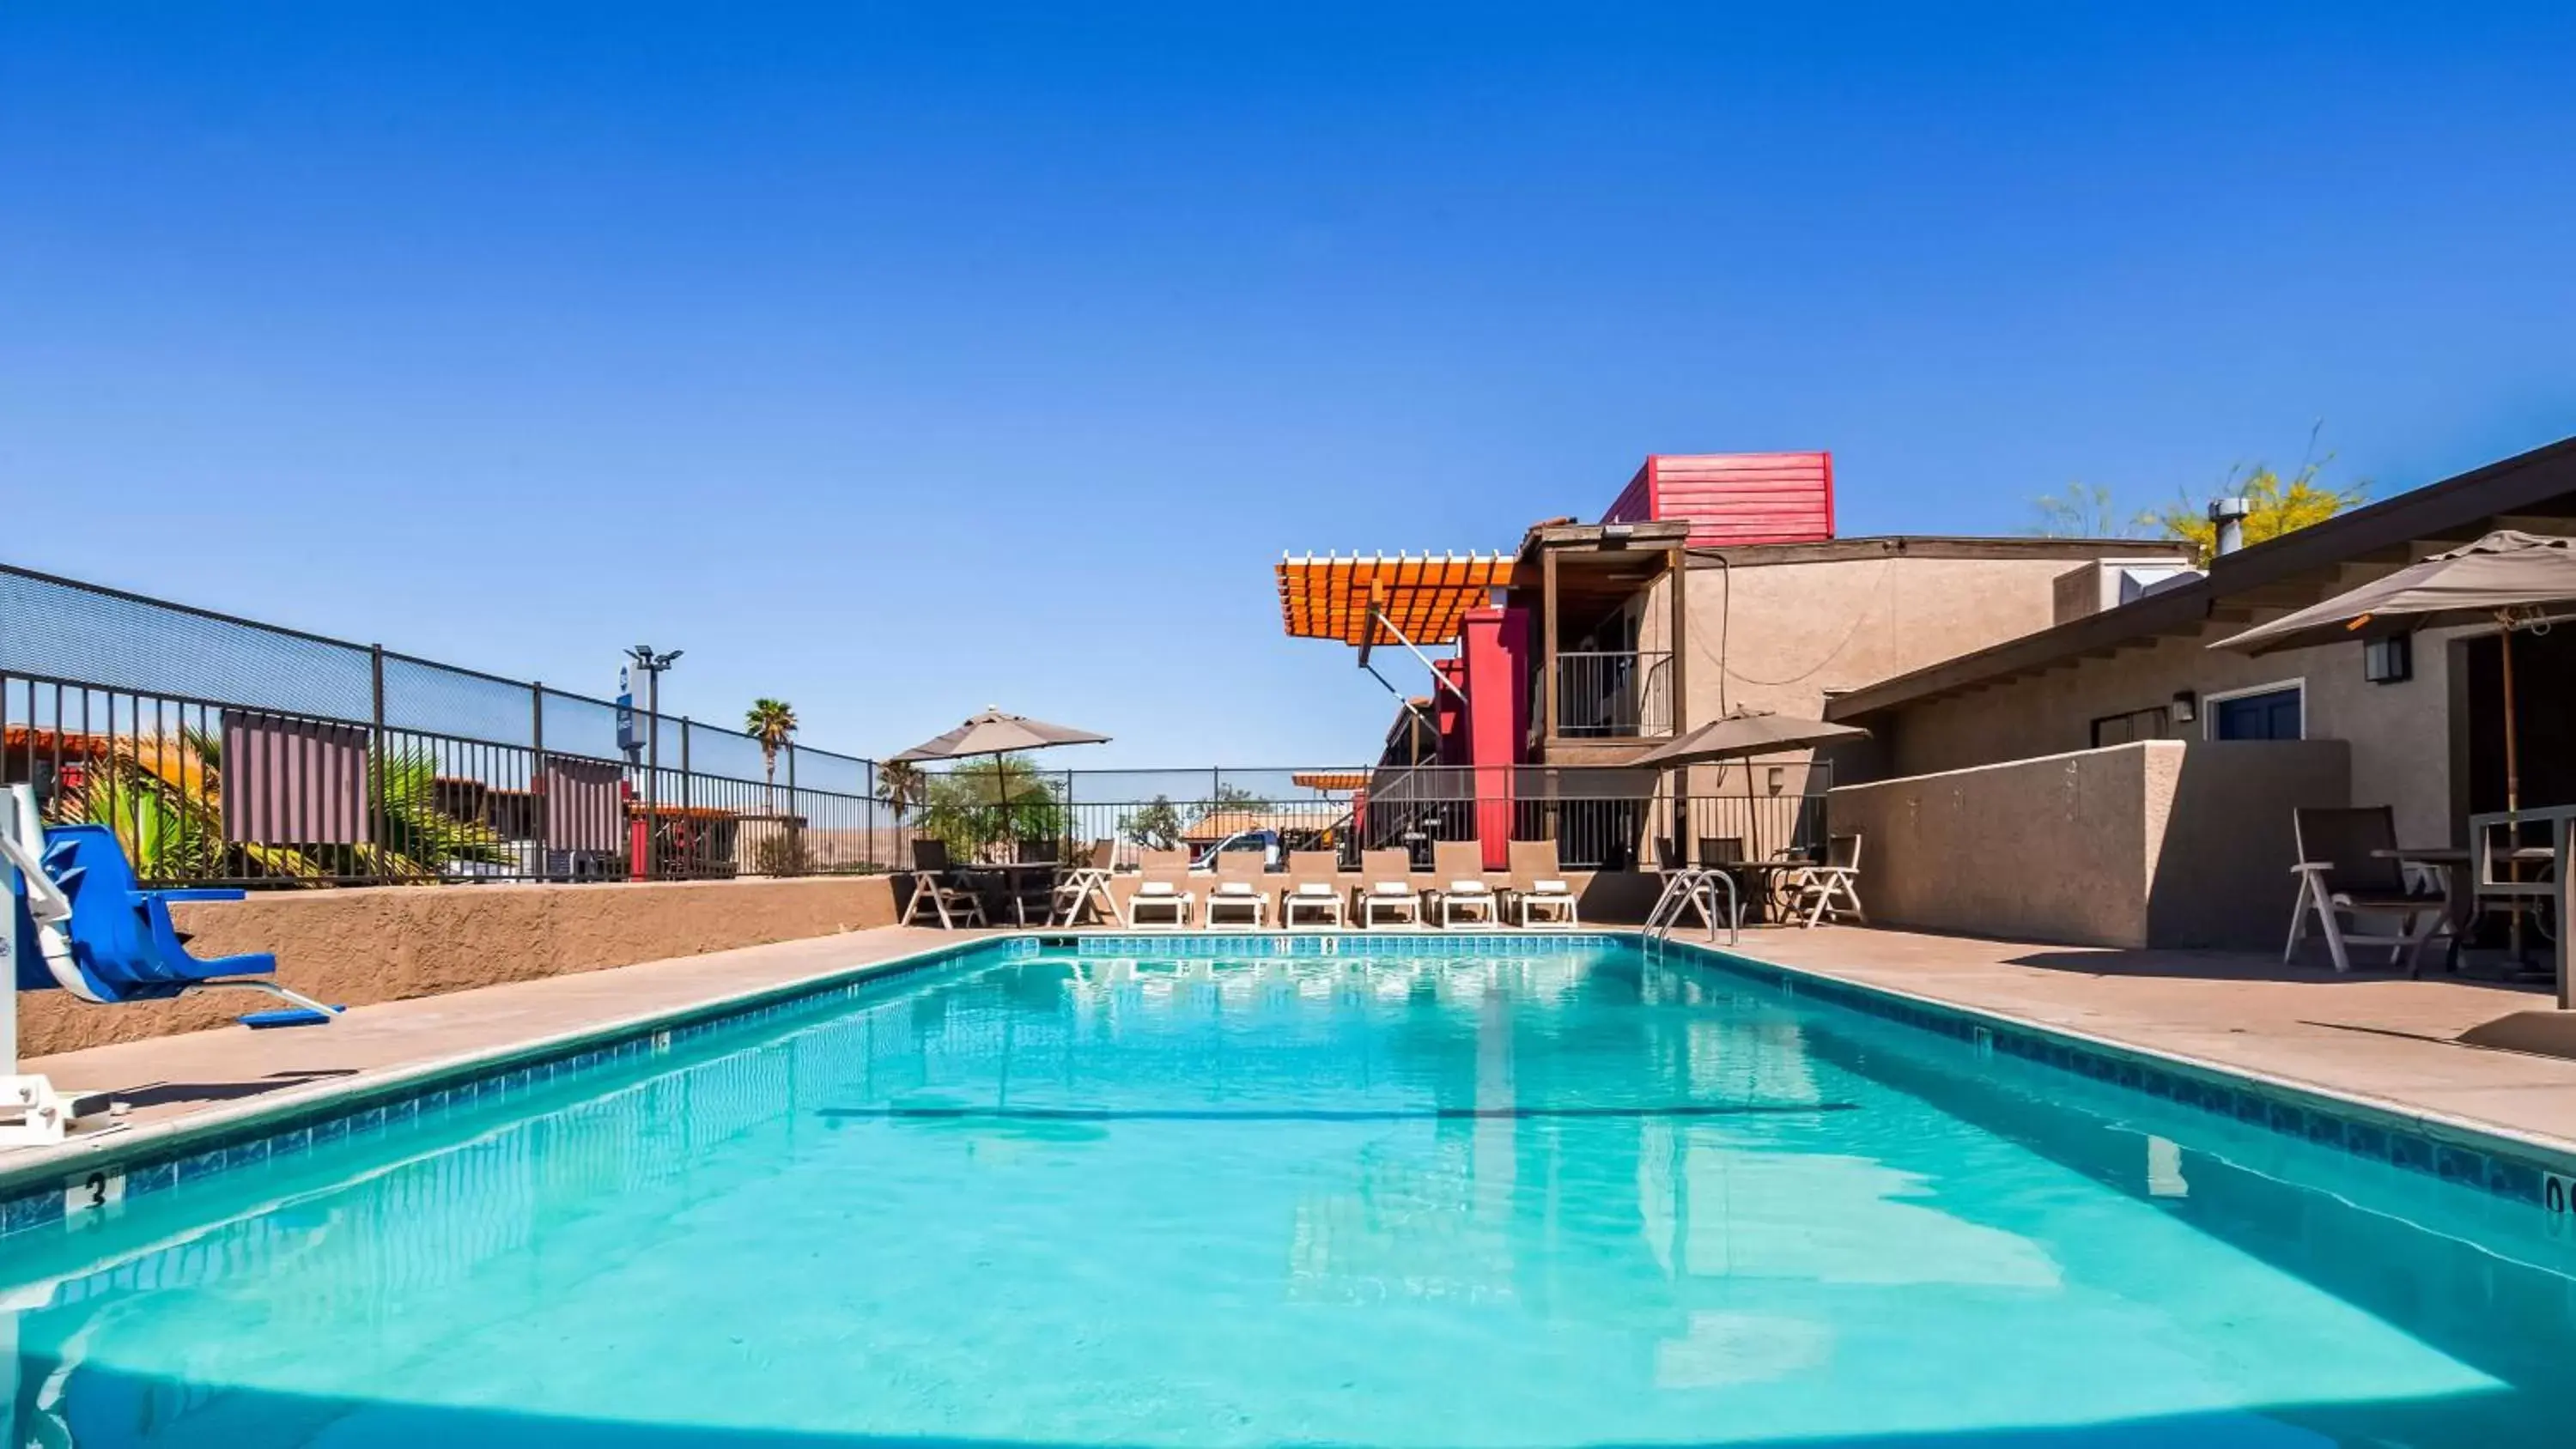 On site, Swimming Pool in Best Western Desert Villa Inn